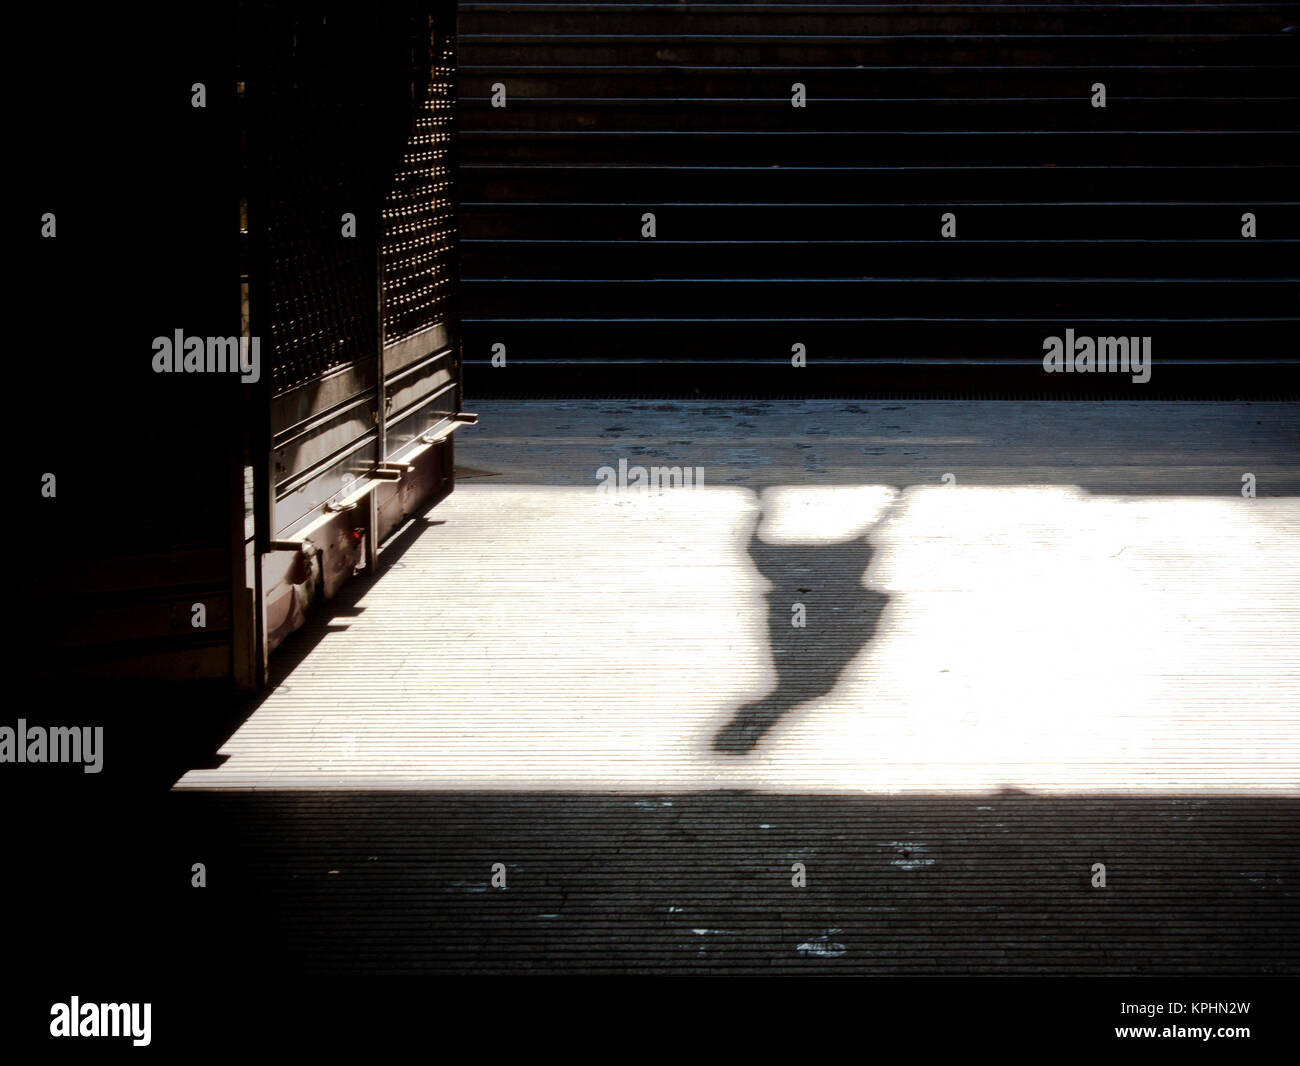 Ciudad soledad : sombra de una persona caminando solos y cerró la tienda de metro el domingo por la mañana en sepia blanco y negro Foto de stock